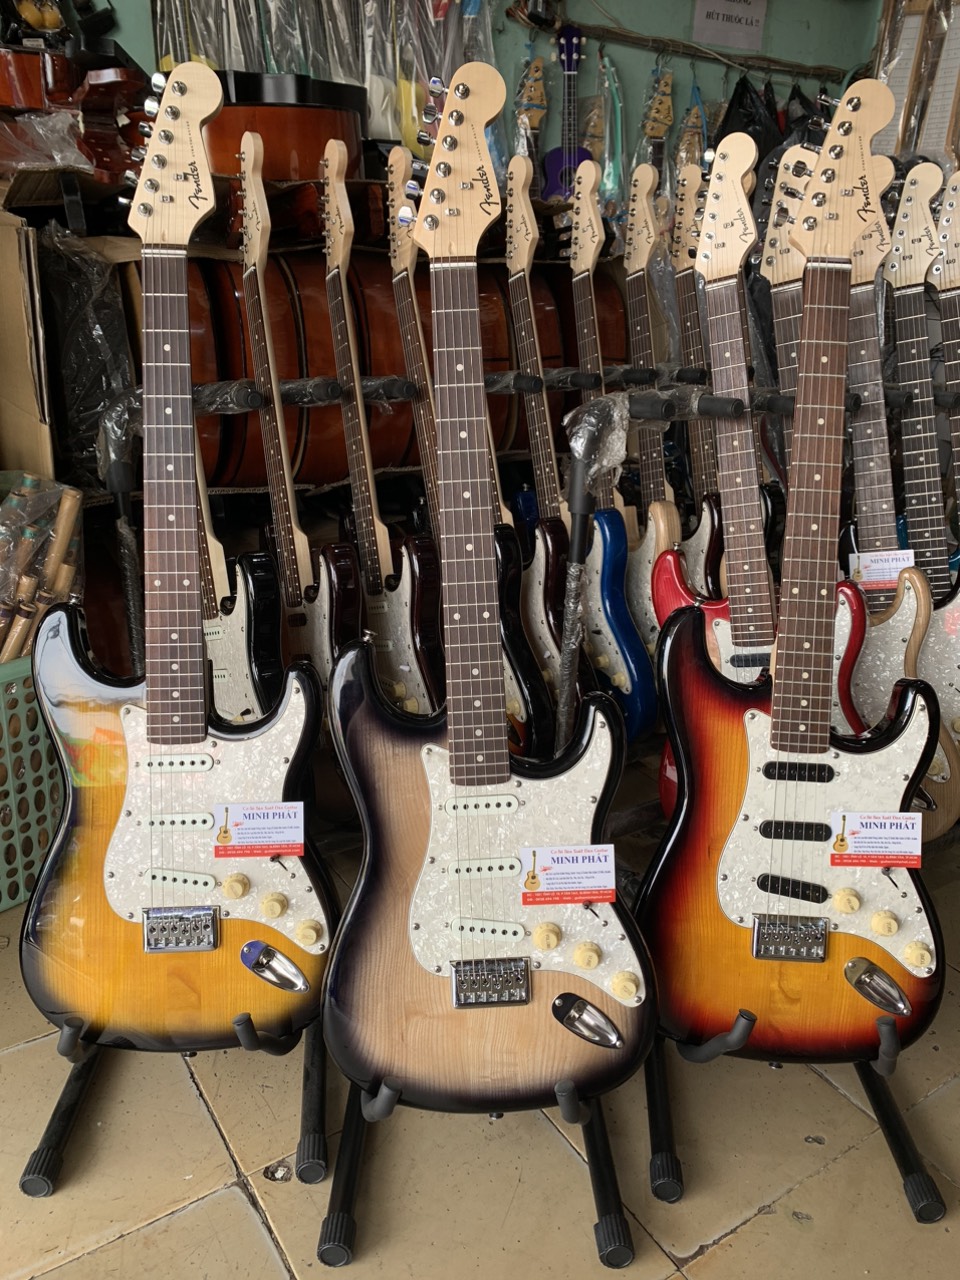 Cửa hàng bán đàn guitar điện chất lượng tại TPHCM - Minh Phát Music - 16